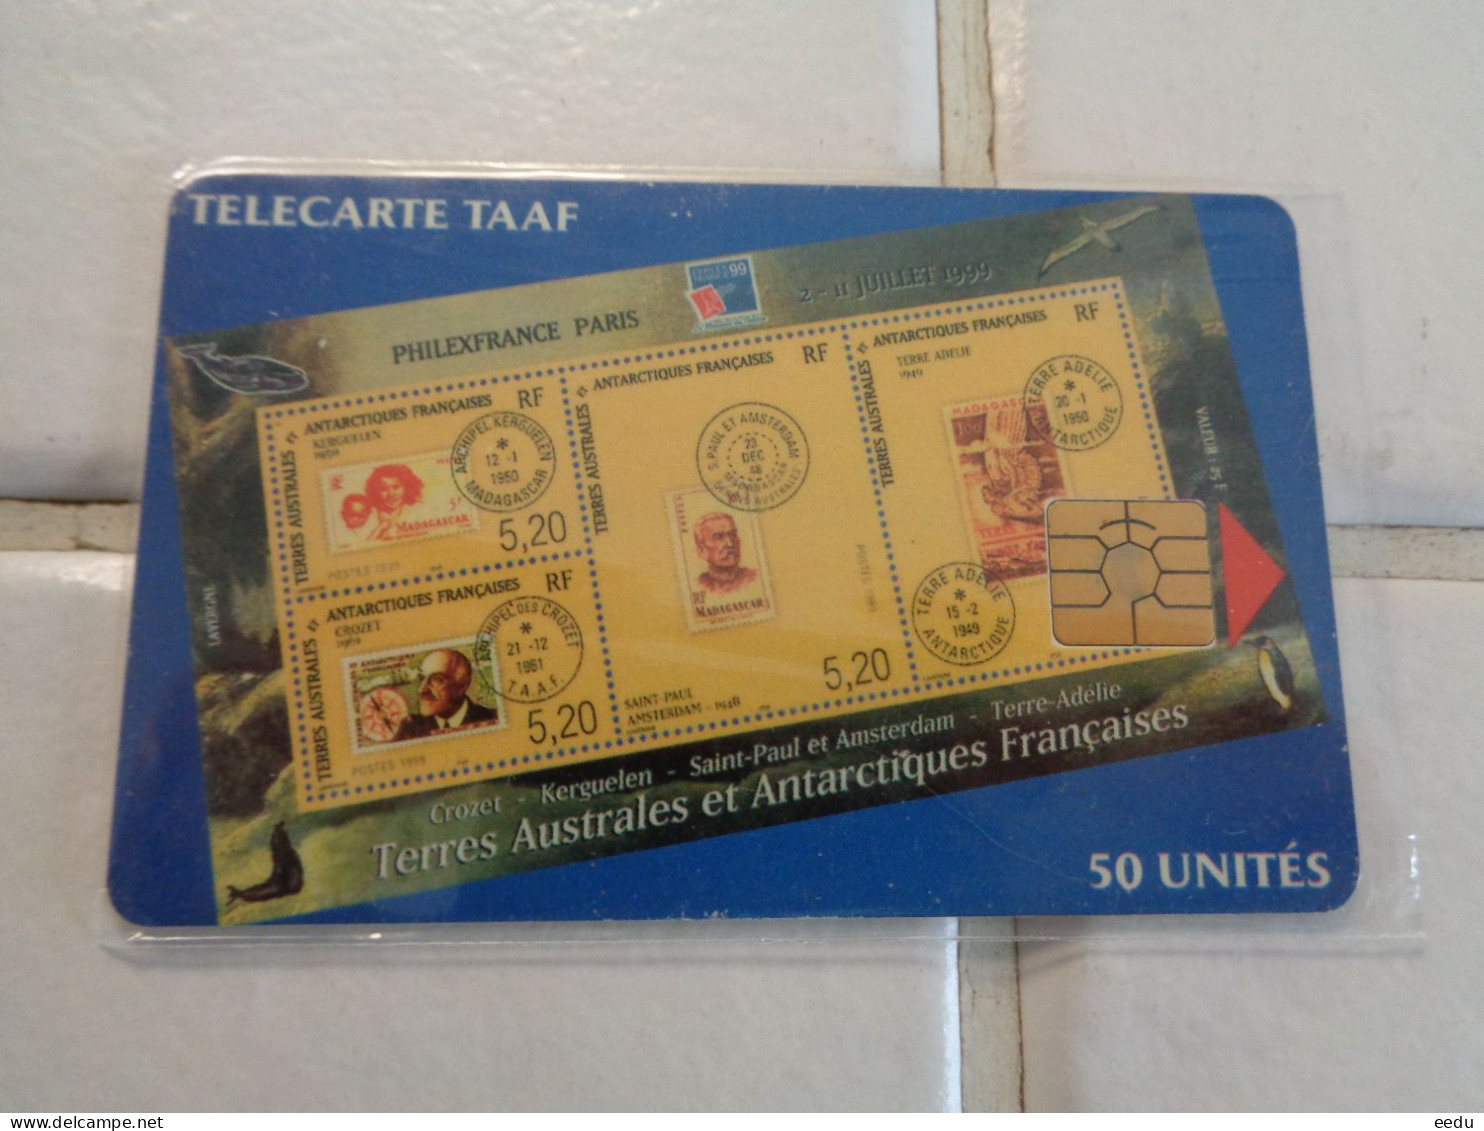 TAAF Phonecard - TAAF - Franse Zuidpoolgewesten